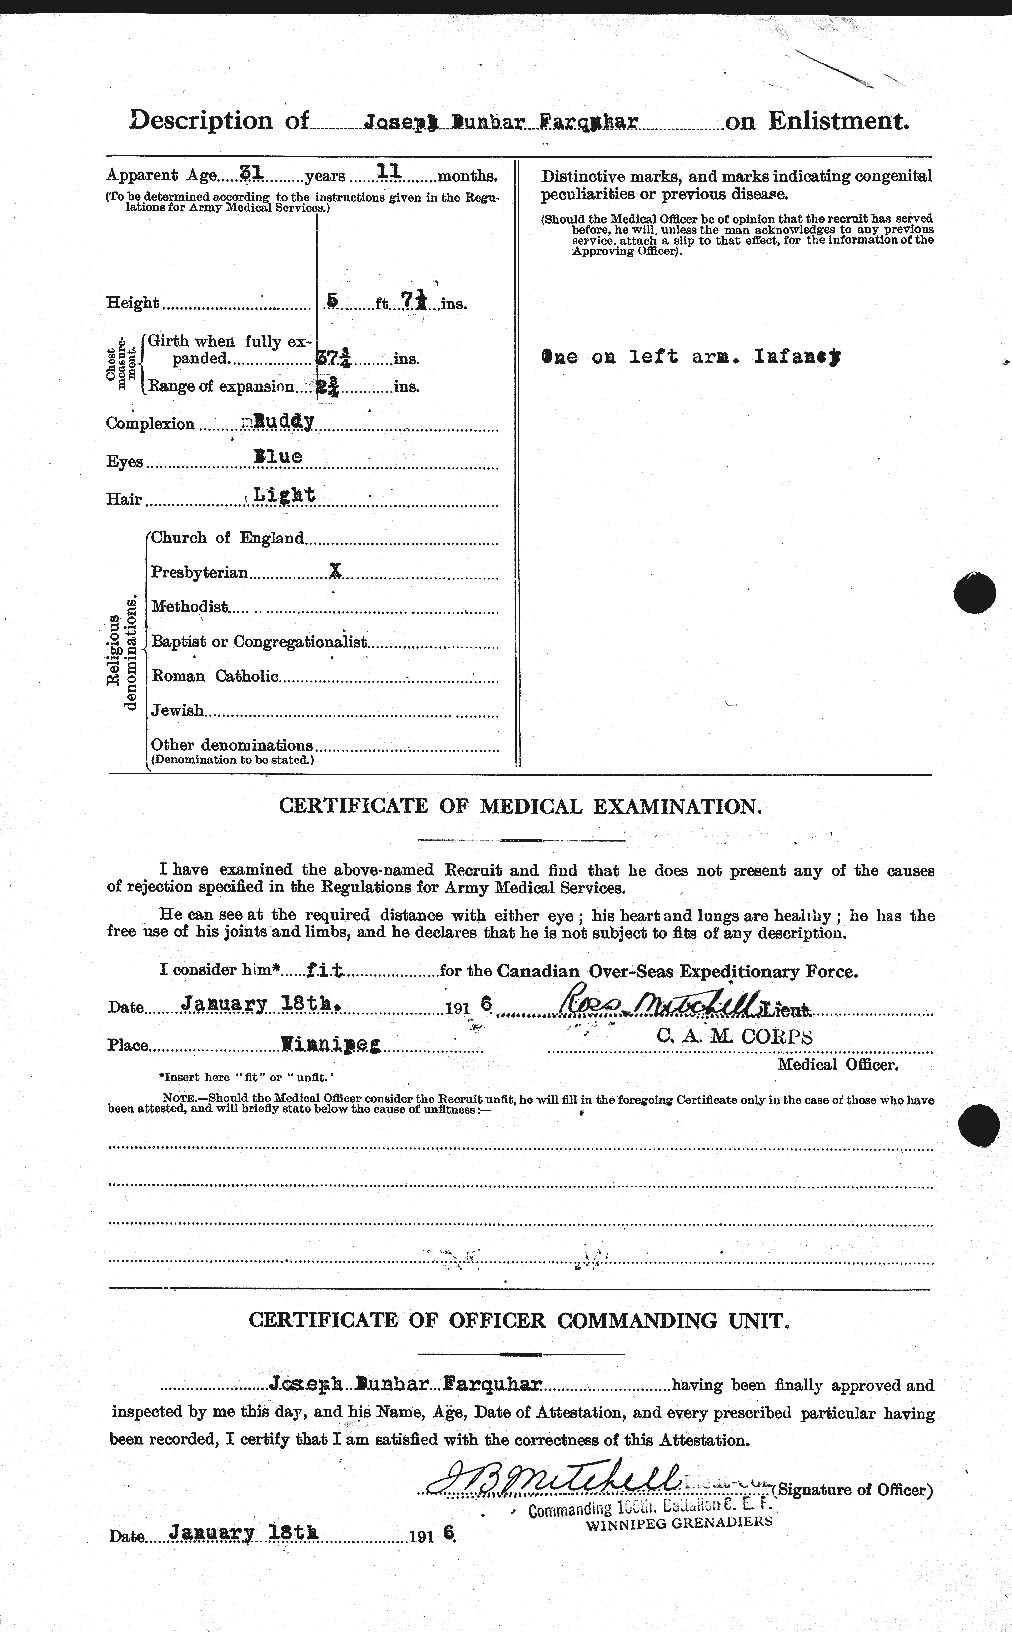 Dossiers du Personnel de la Première Guerre mondiale - CEC 318787b